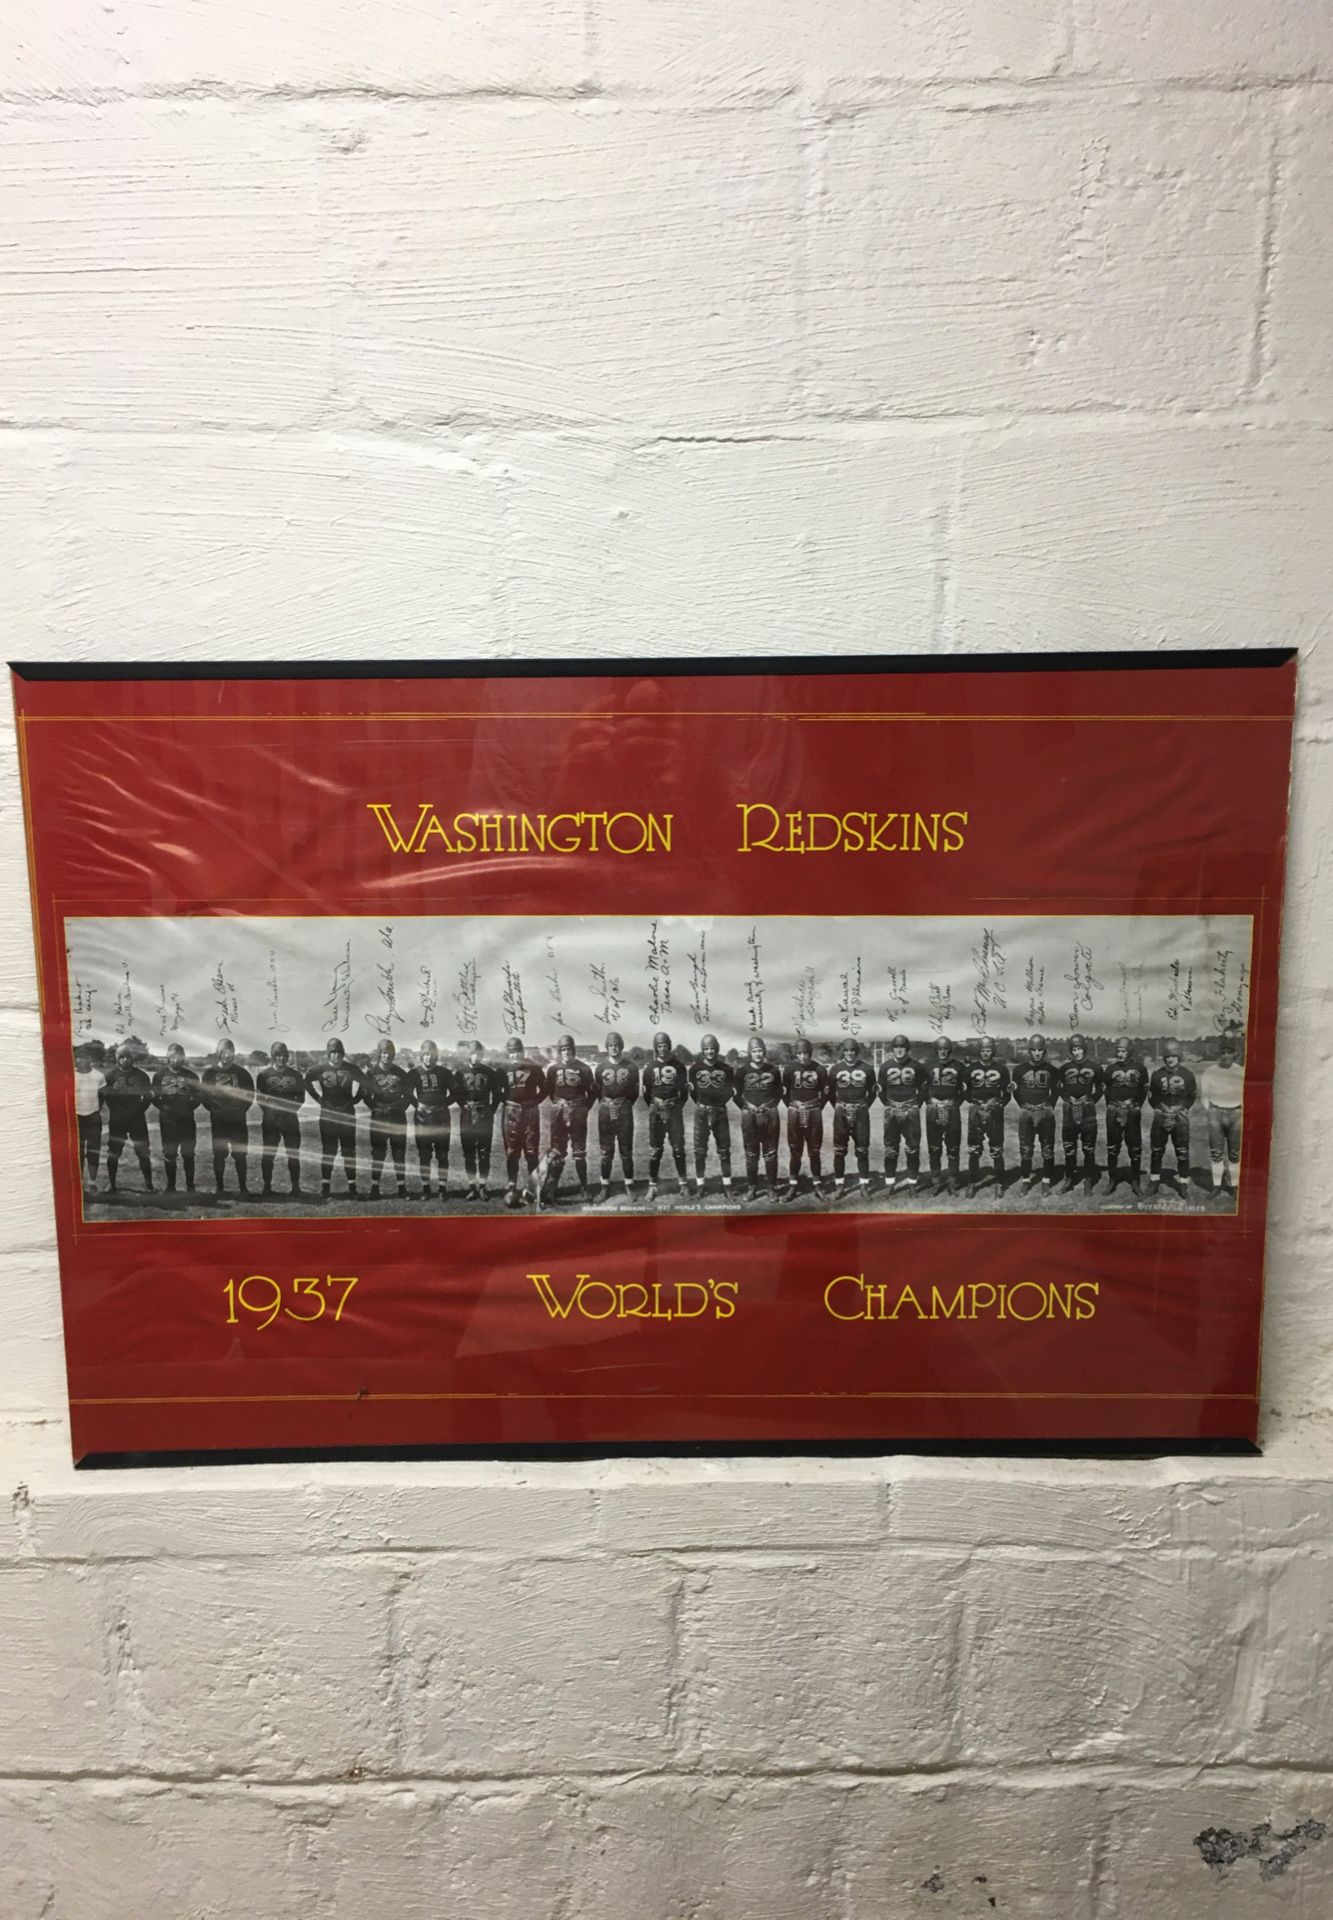 Redskins 1937 champions framed poster